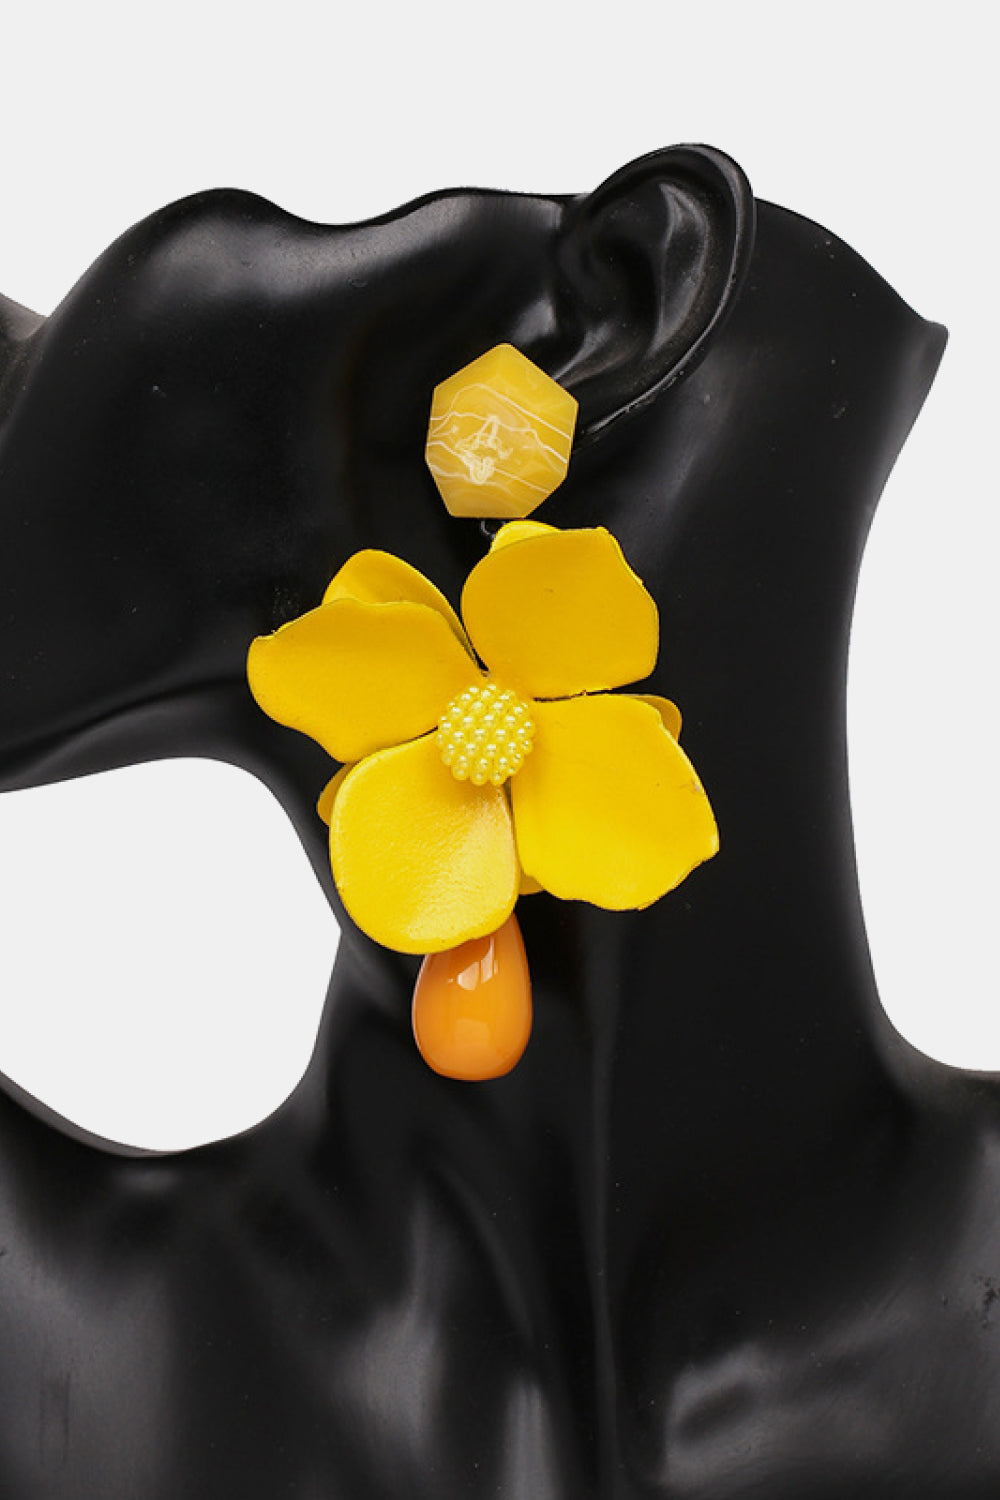 Bloosom Flower and Teardrop Resin Dangle Earrings